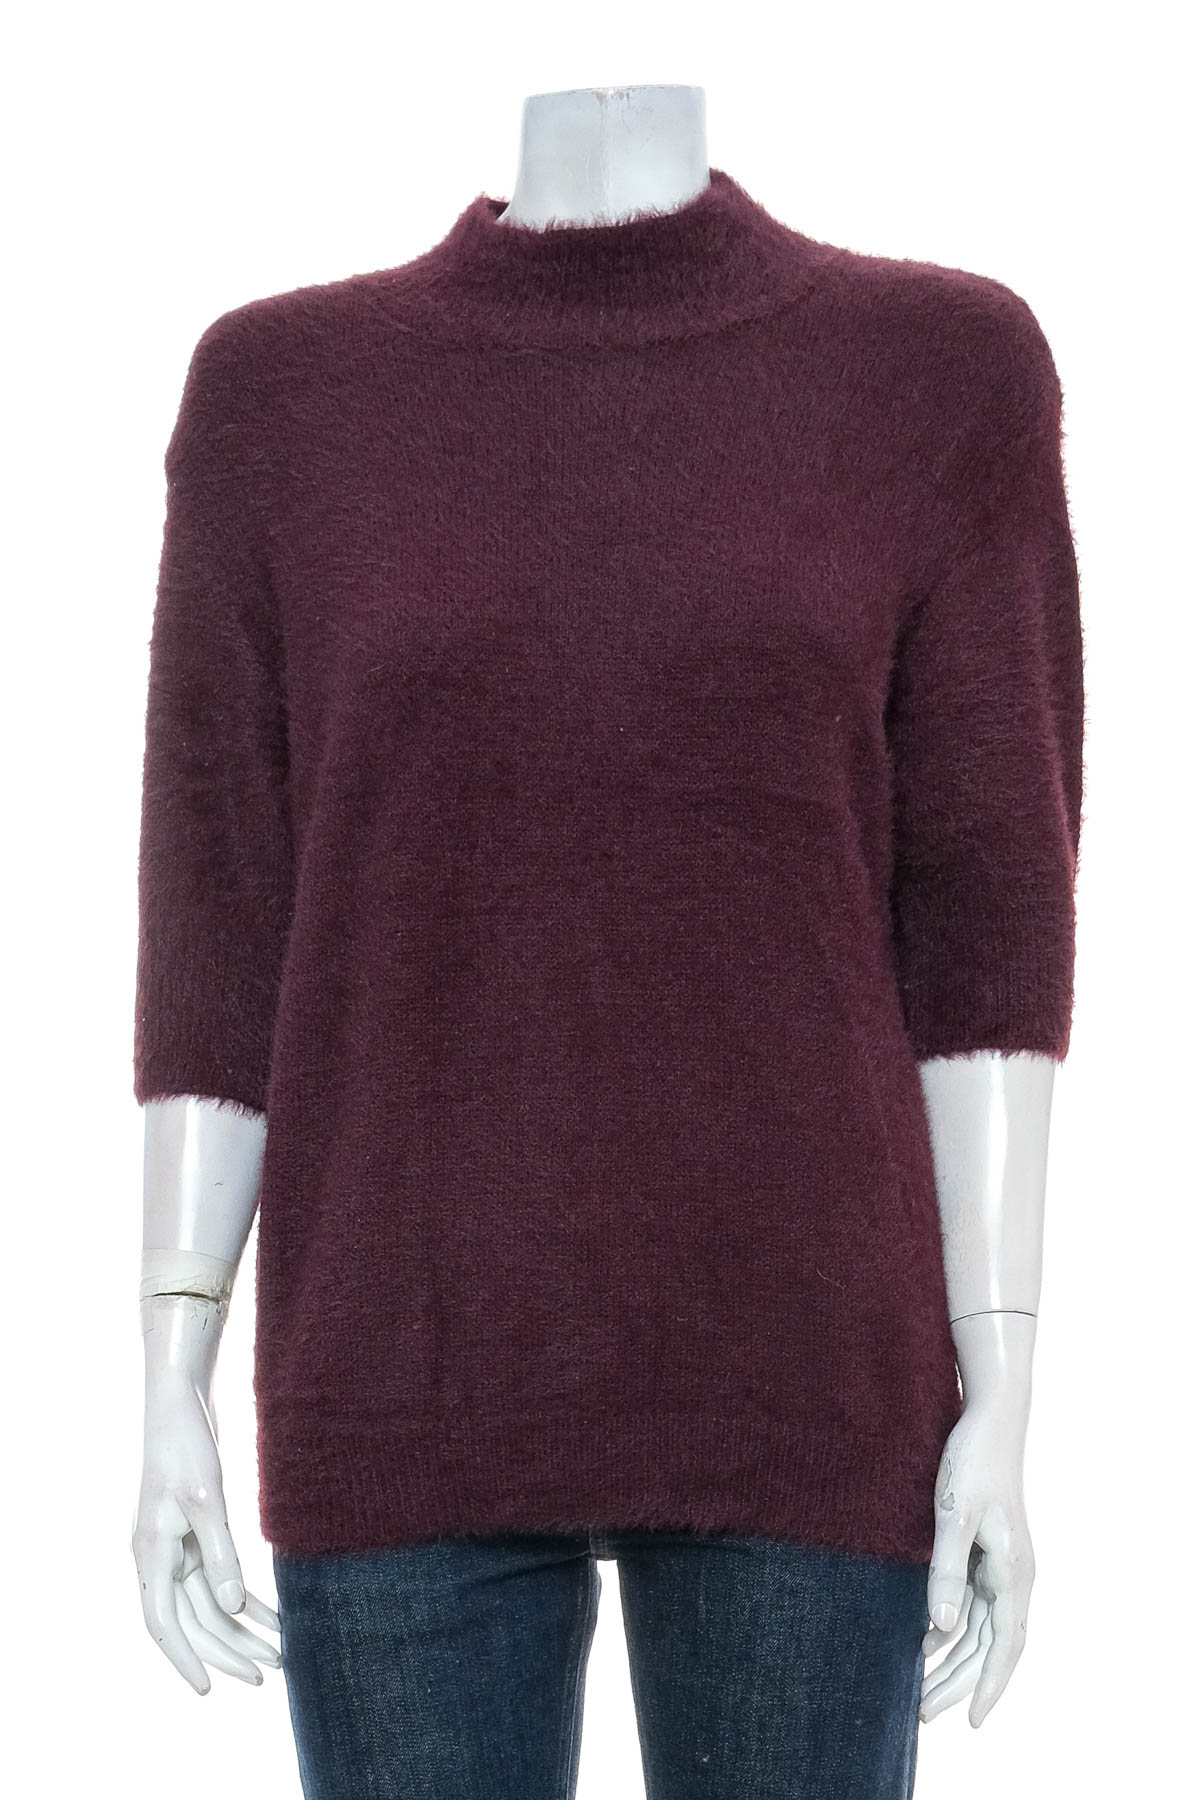 Γυναικείο πουλόβερ - Marled BY REUNITED CLOTHING - 0